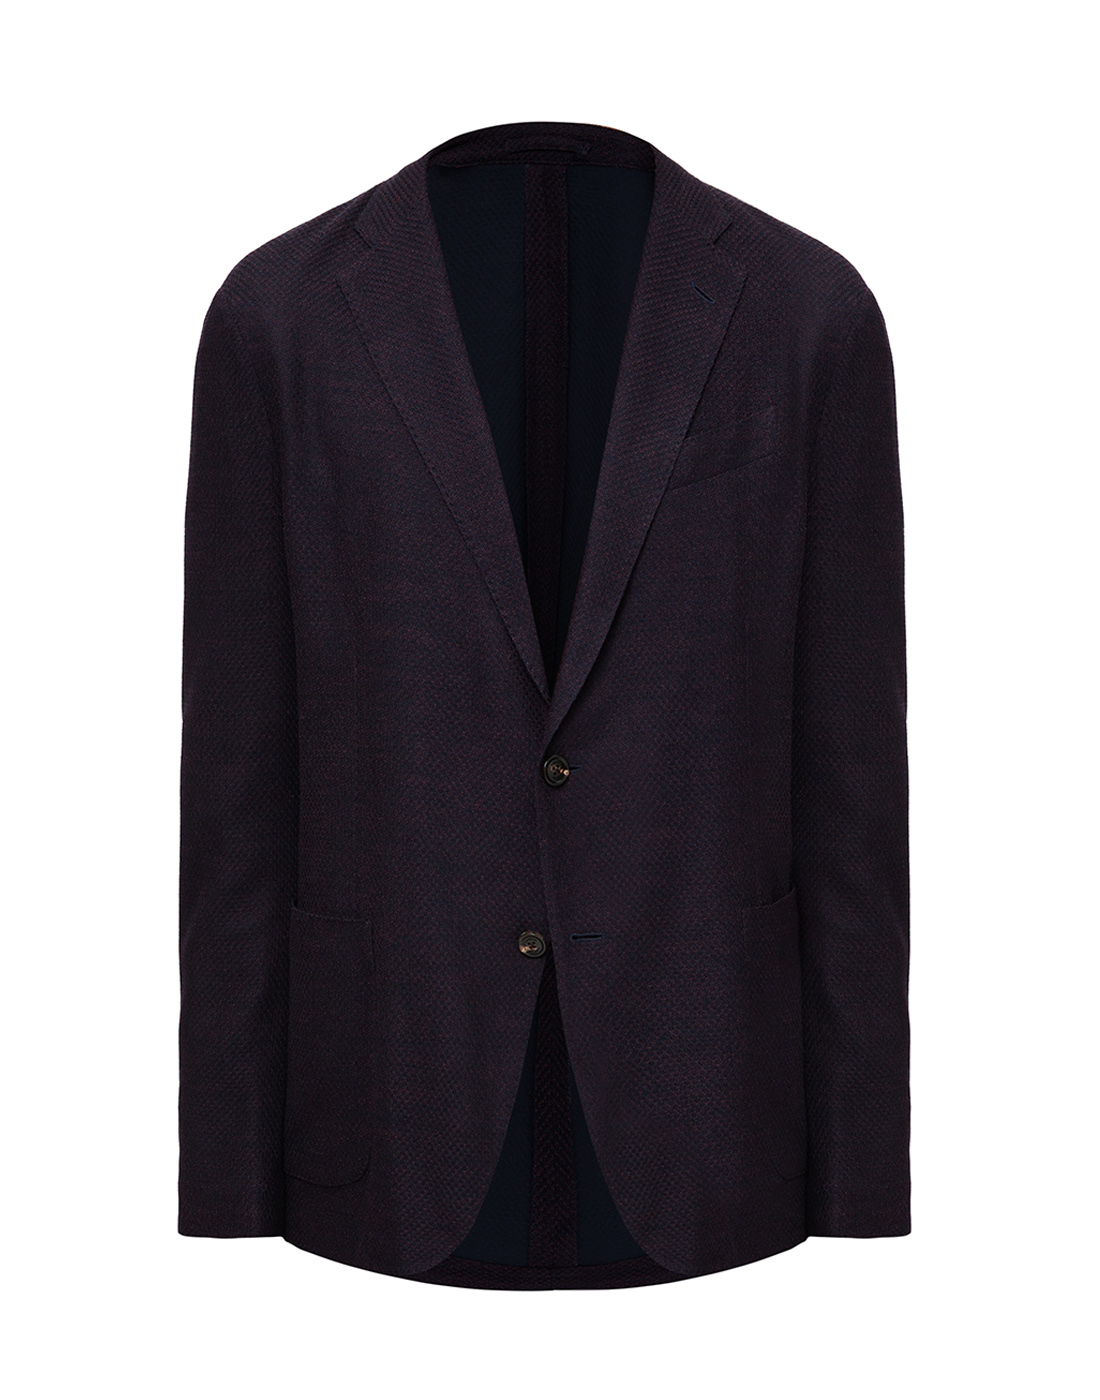 Пиджак однобортный бордовый мужской  Lardini SIMLKJ1E IM55036 700-1